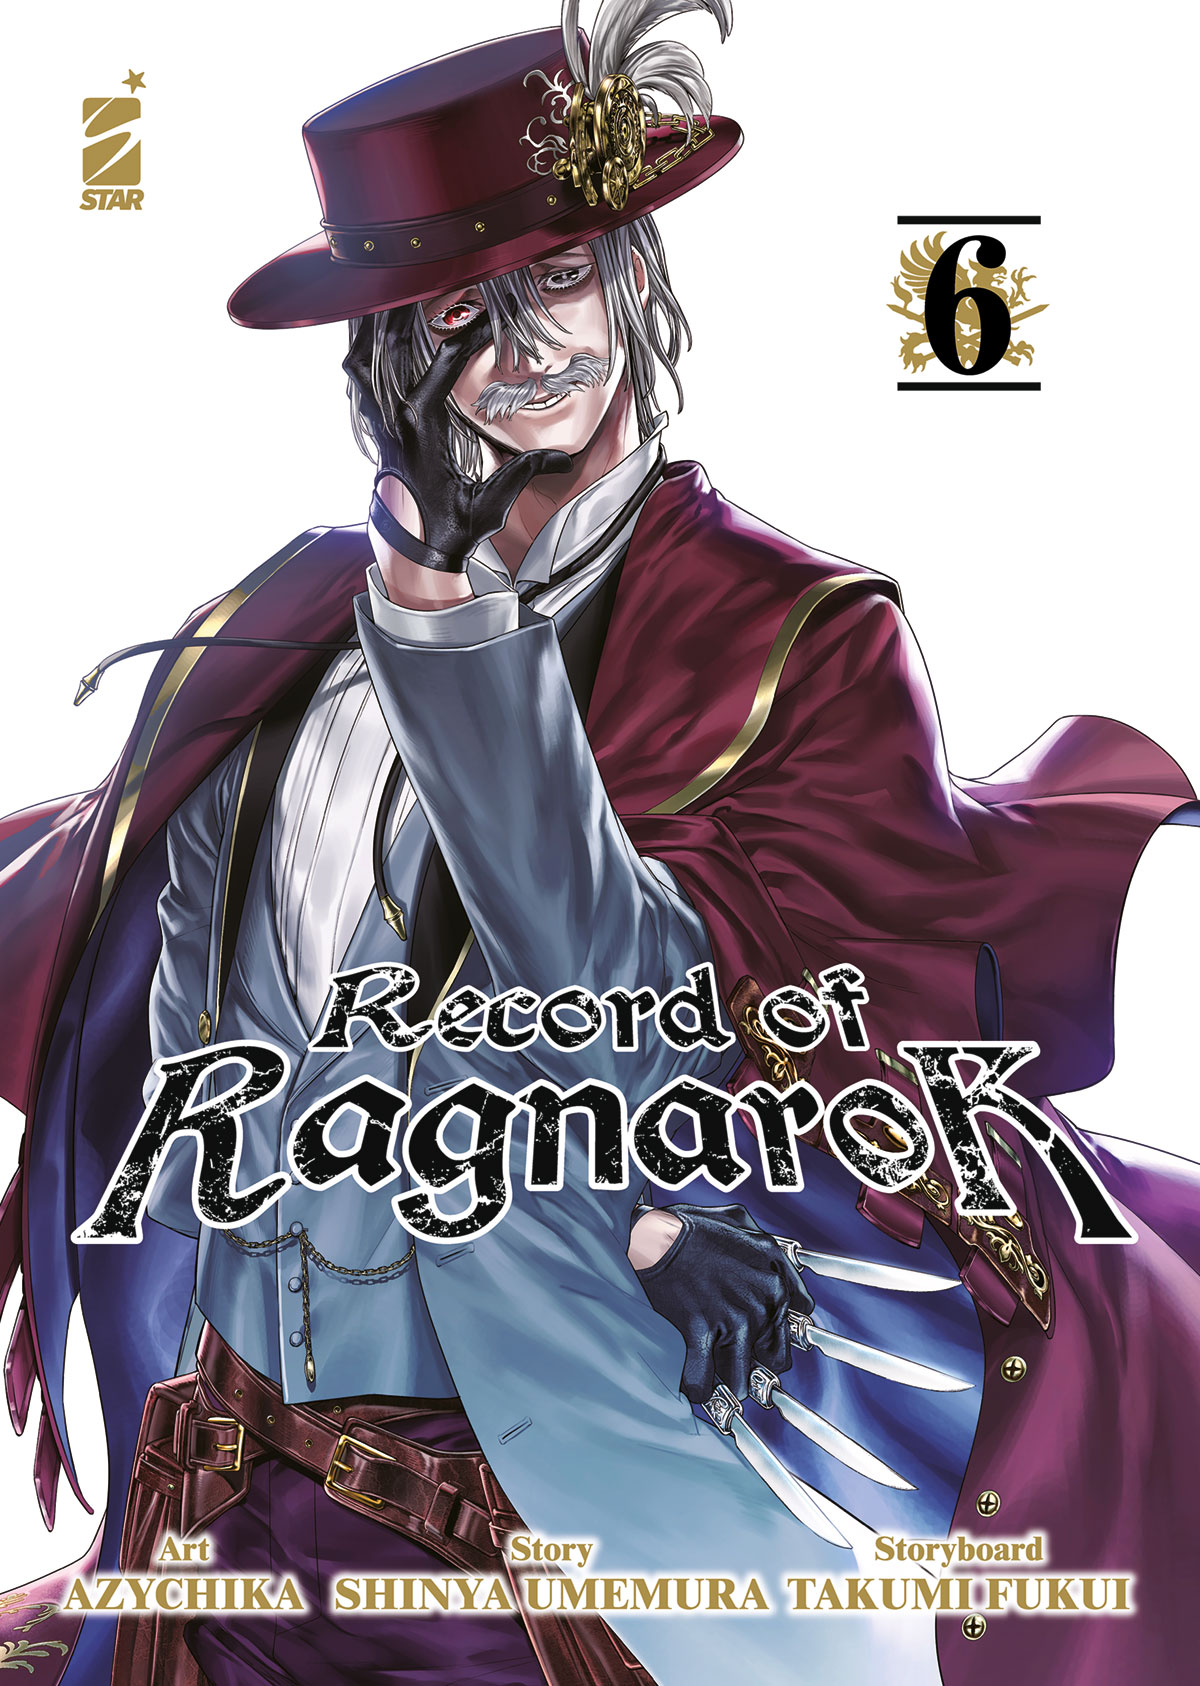 ACTION #330 RECORD OF RAGNAROK N.06